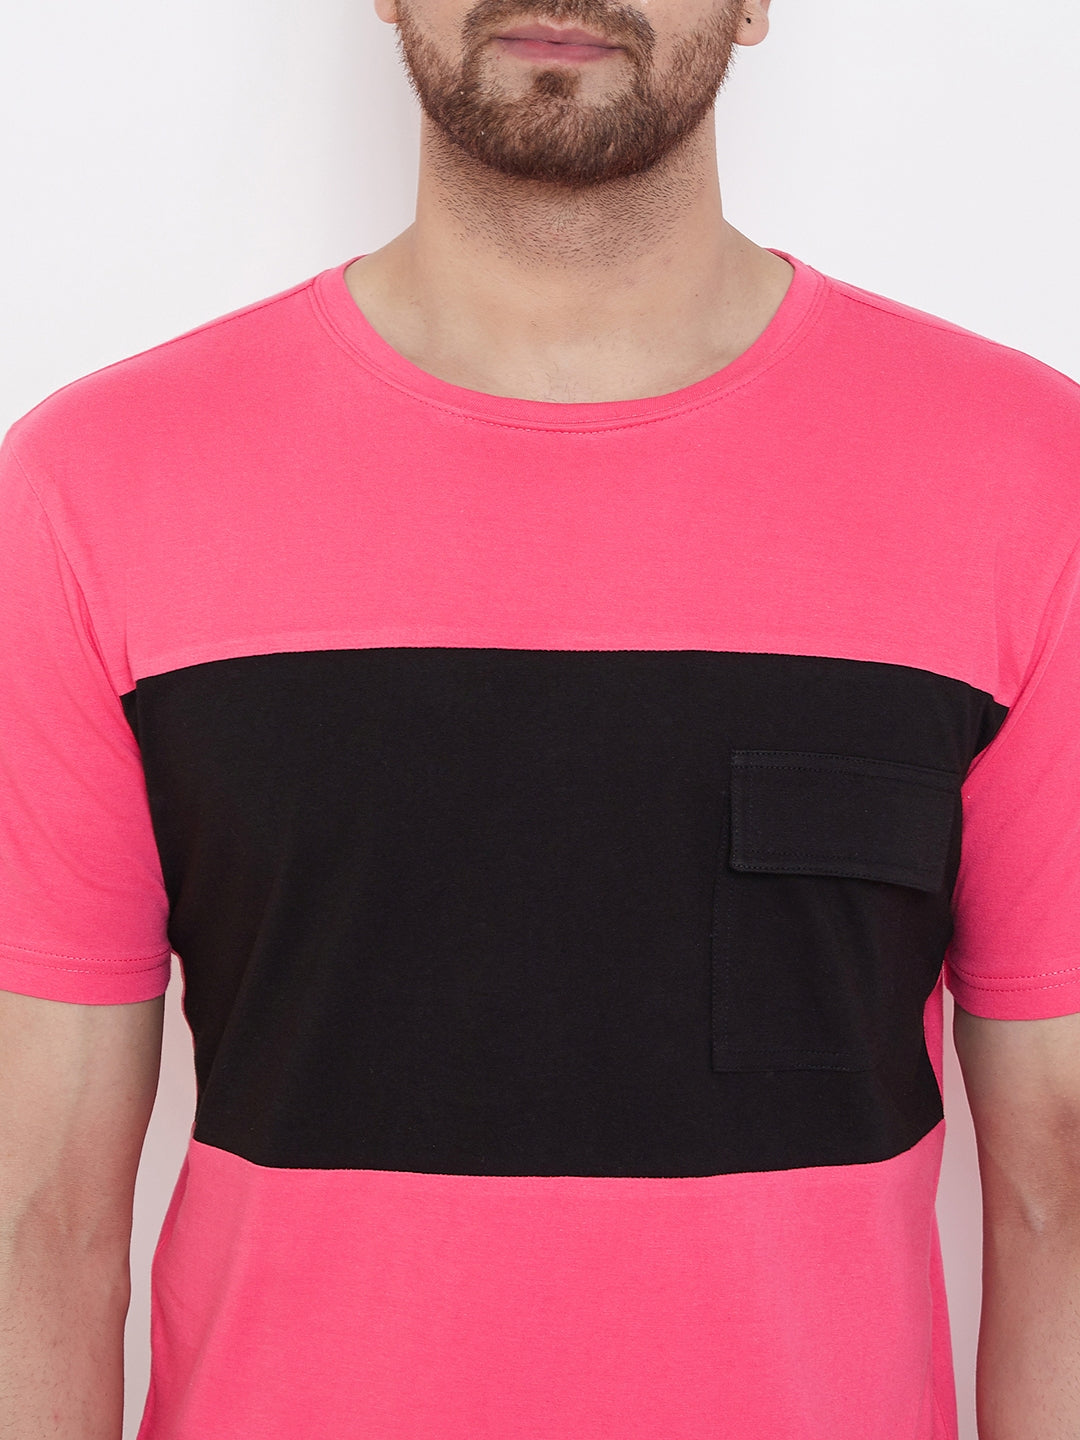 Pink/Black Men's Half Sleeves Round Neck T-Shirt